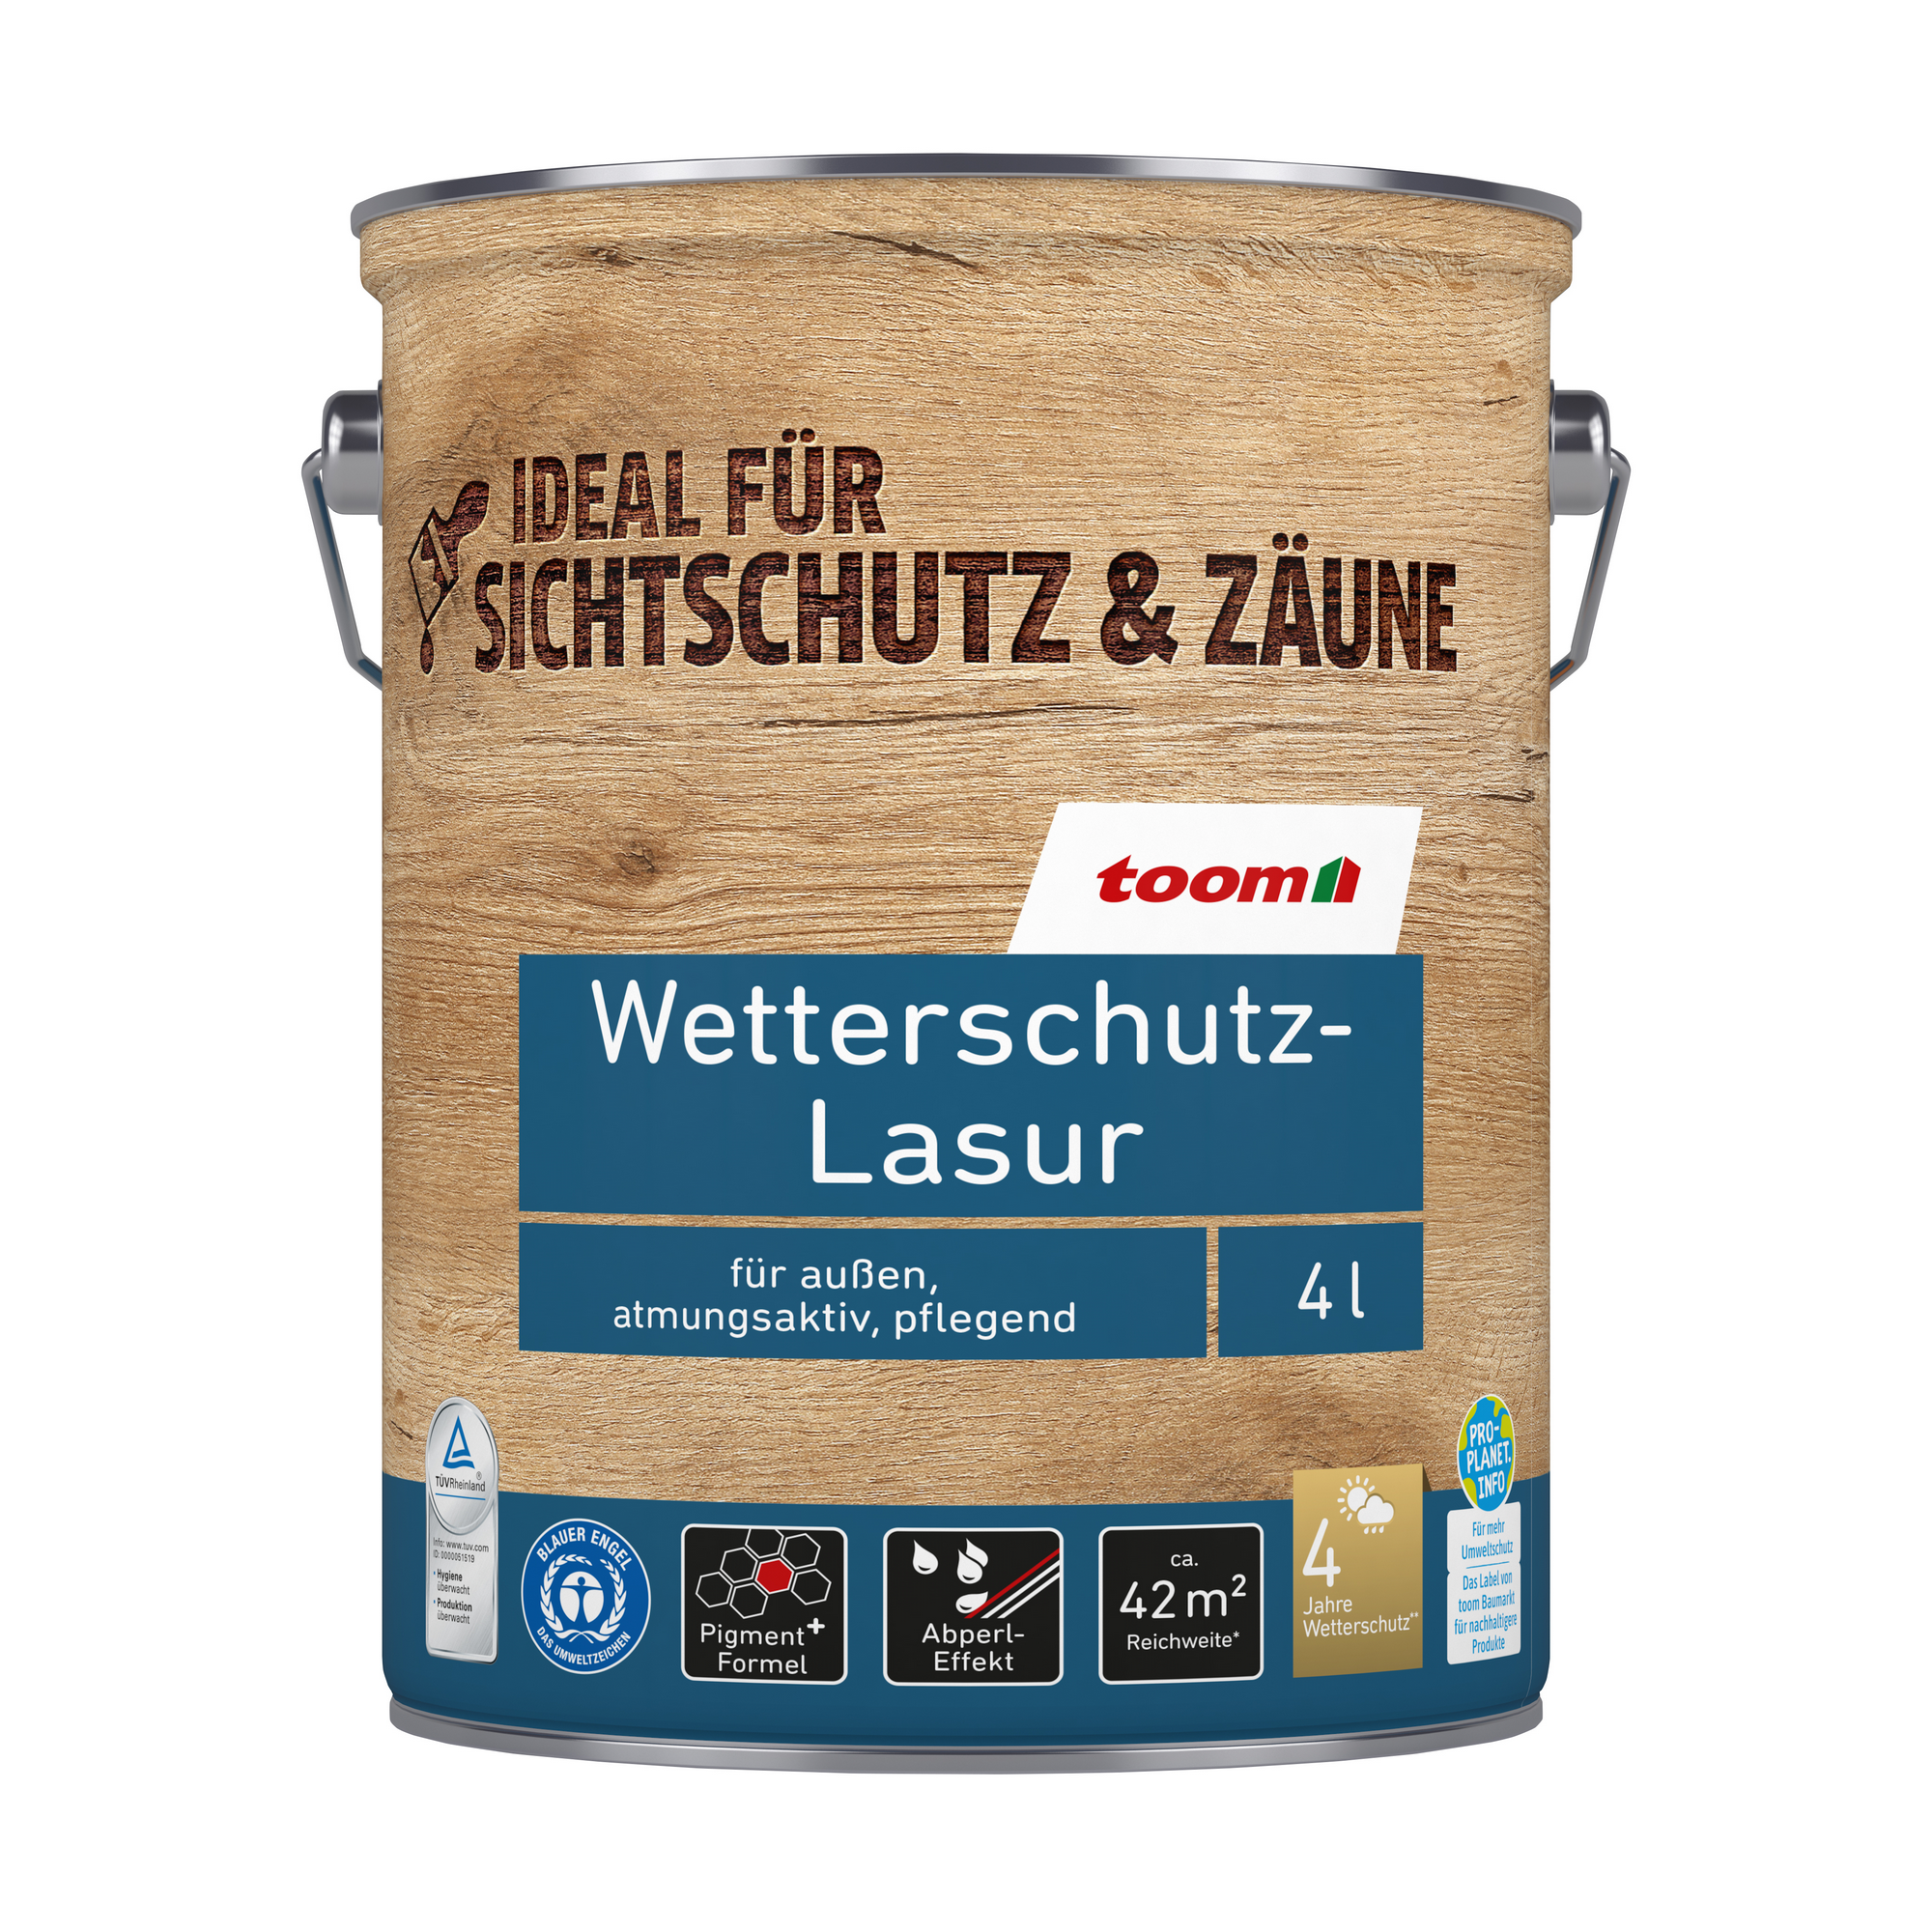 Wetterschutz-Lasur palisanderfarben 4 l + product picture